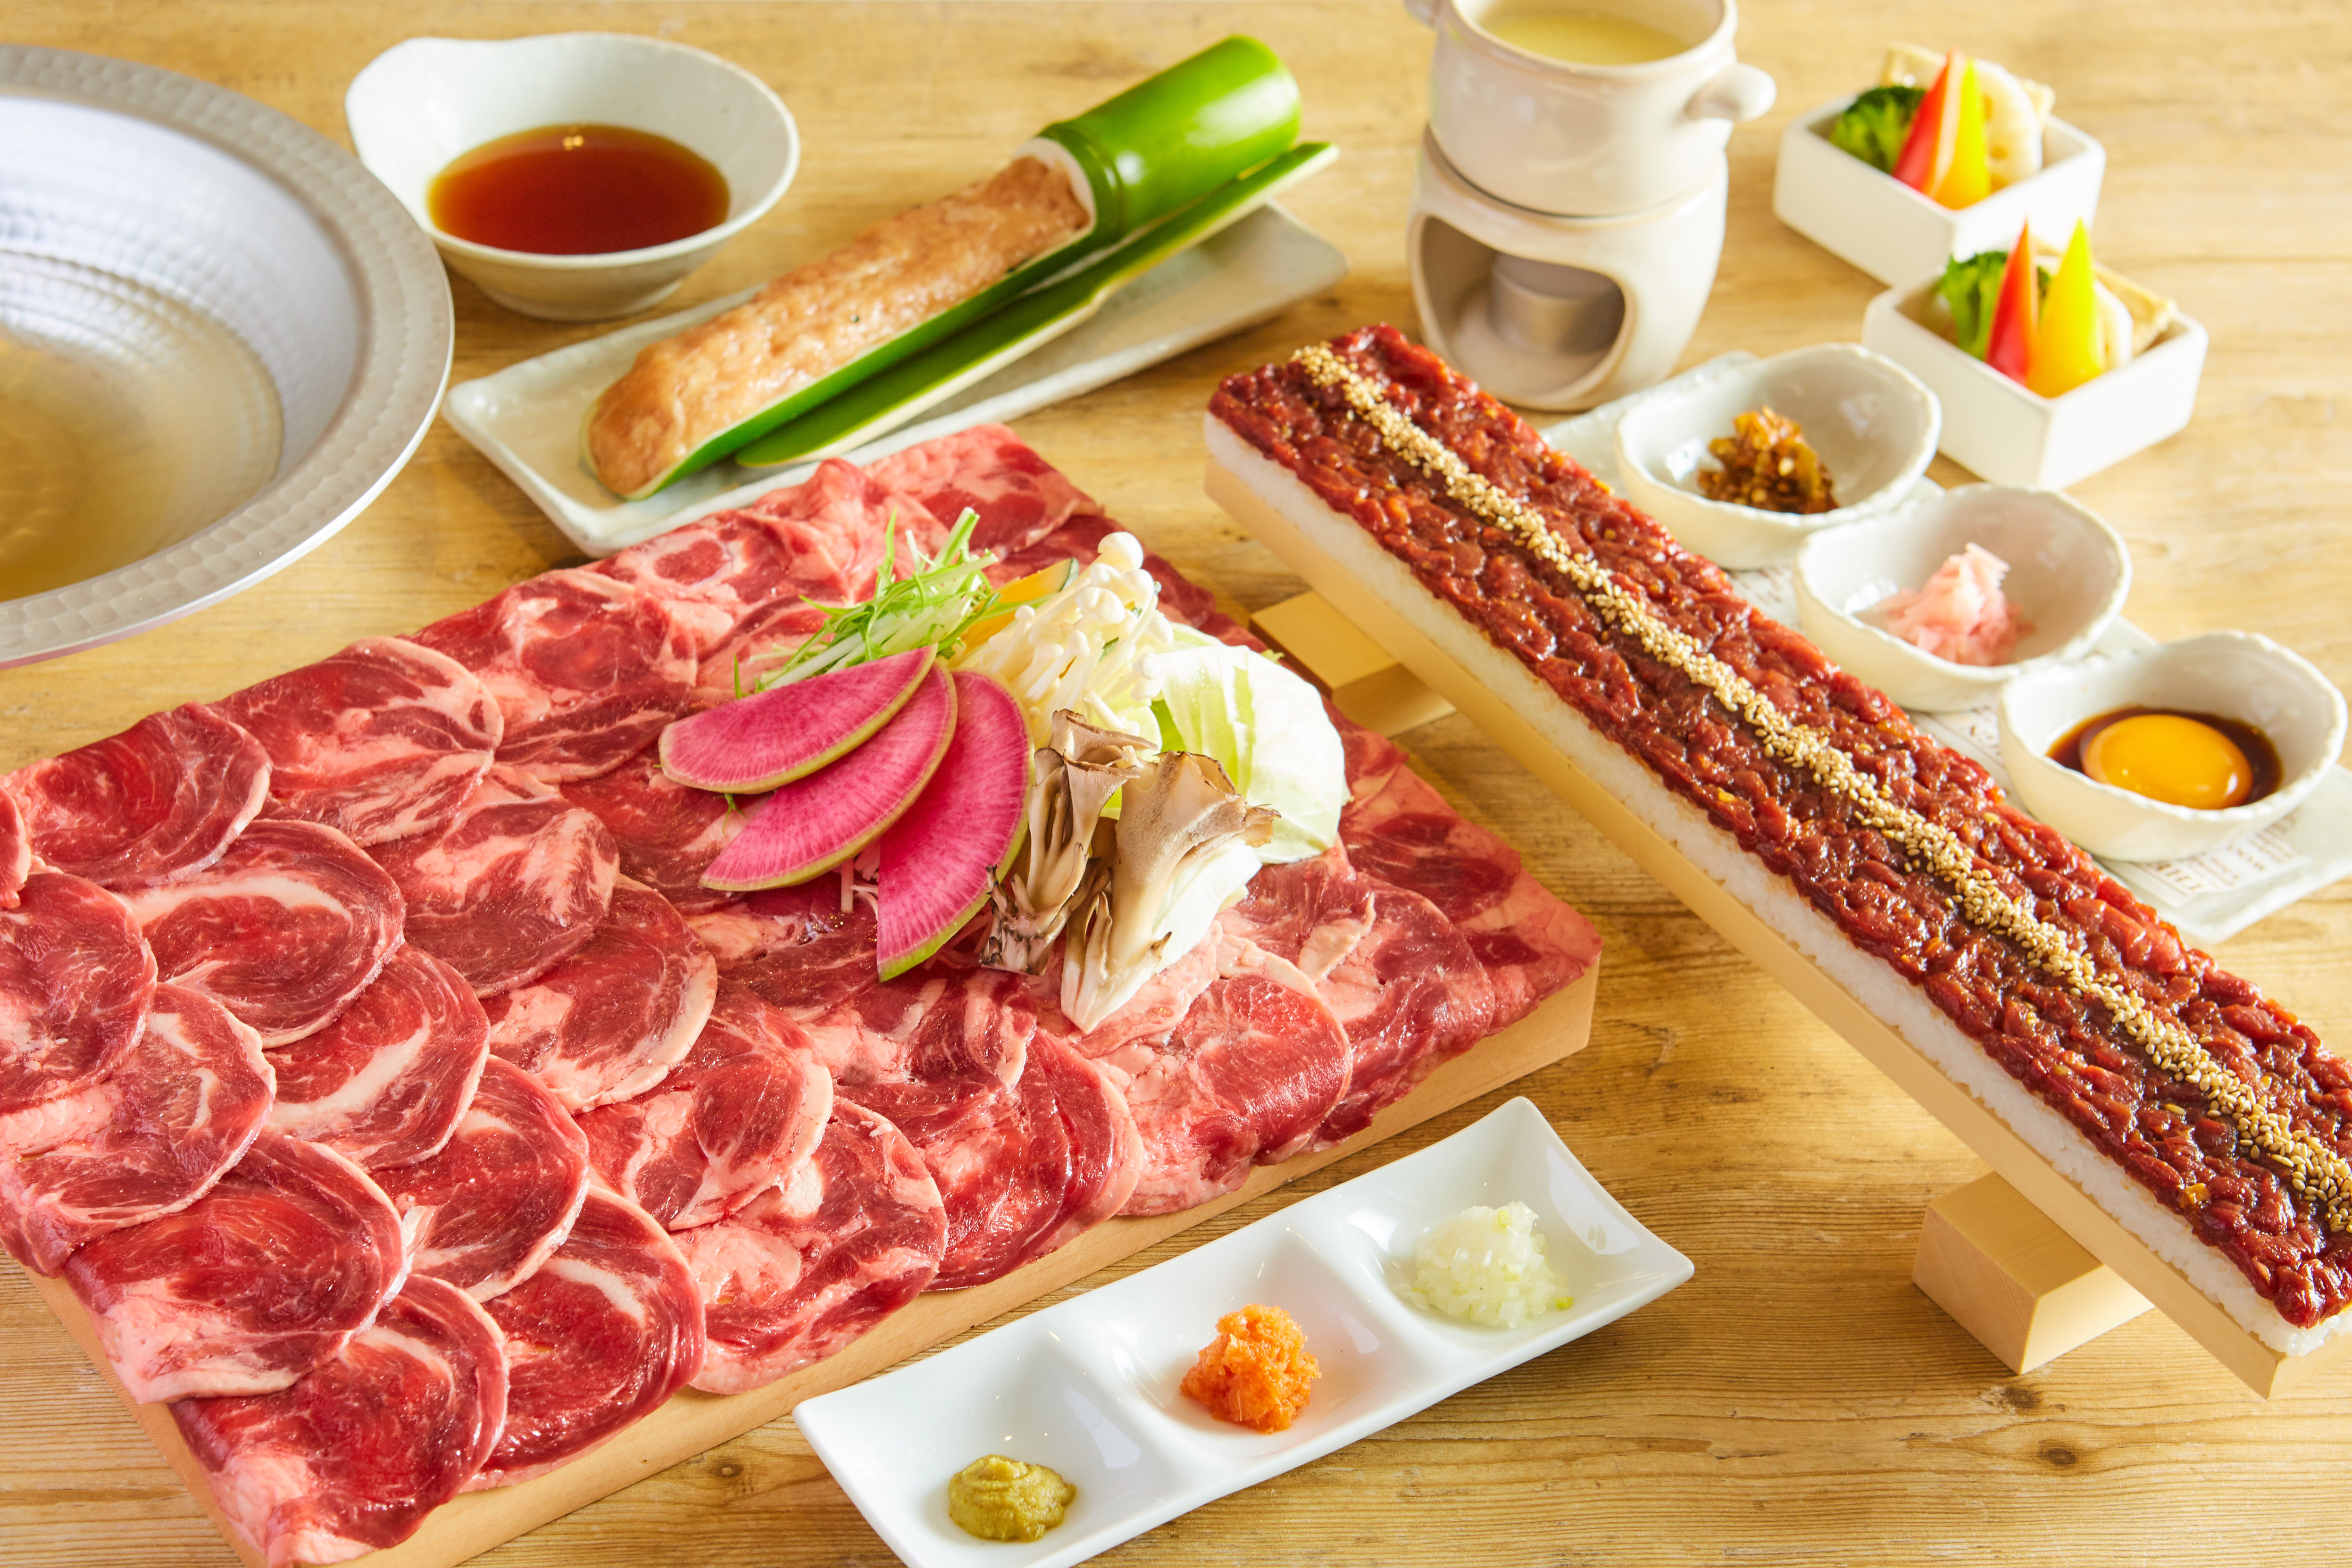 ヘルシーでフォトジェ肉な牛タン専門店 うま囲 が浦和に5 15オープン 記念キャンペーンとしてタン しゃぶ ロングユッケ寿司が 半額 に ホリイフードサービス株式会社のプレスリリース